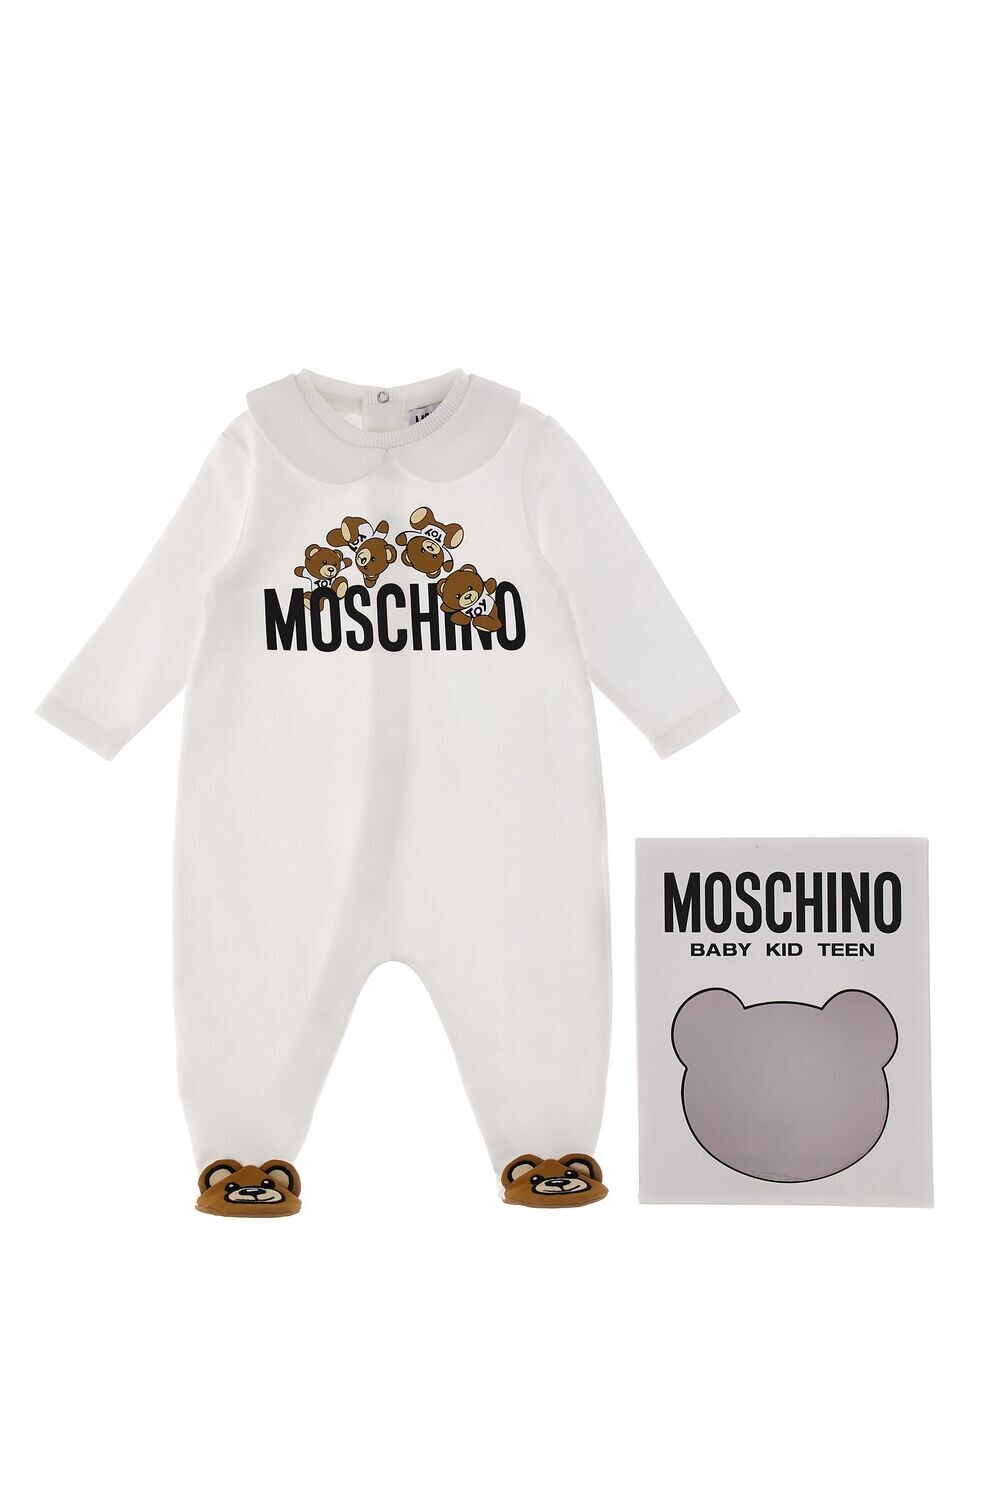 Moschino - Tutina con piedini Teddy, Size: 1 mese